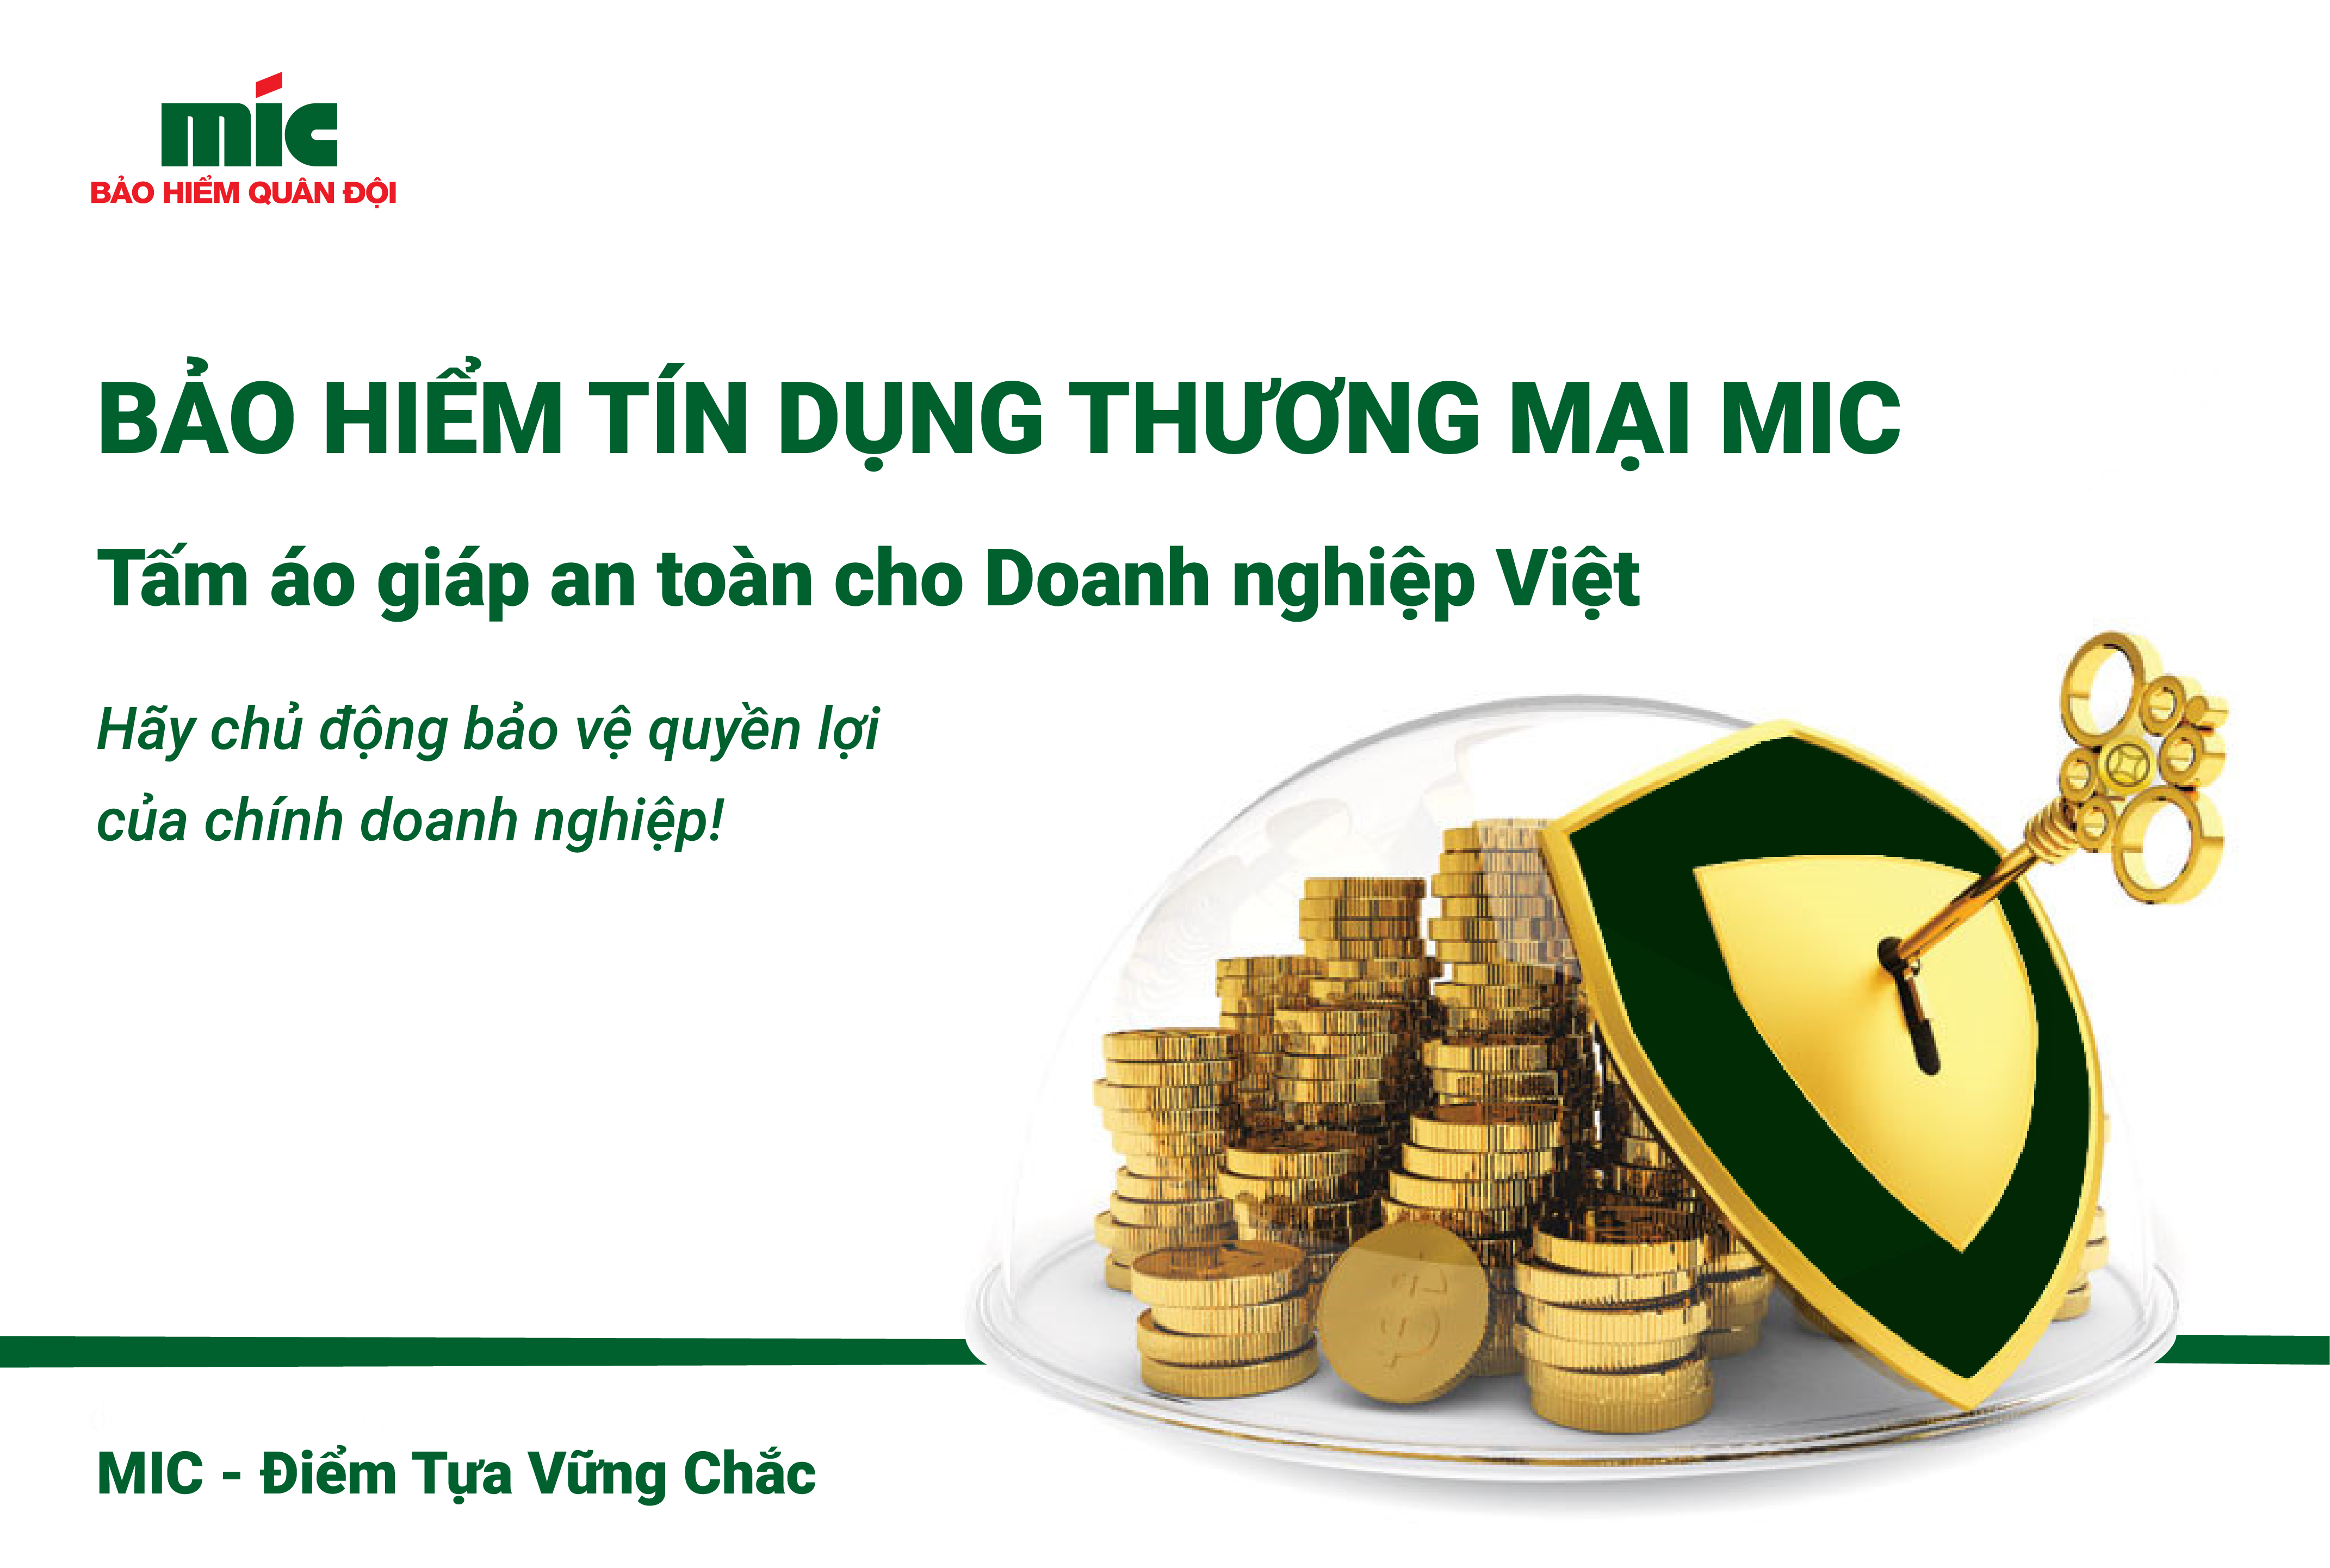 Bảo hiểm tín dụng thương mại - “tấm áo giáp an toàn” cho doanh nghiệp Việt